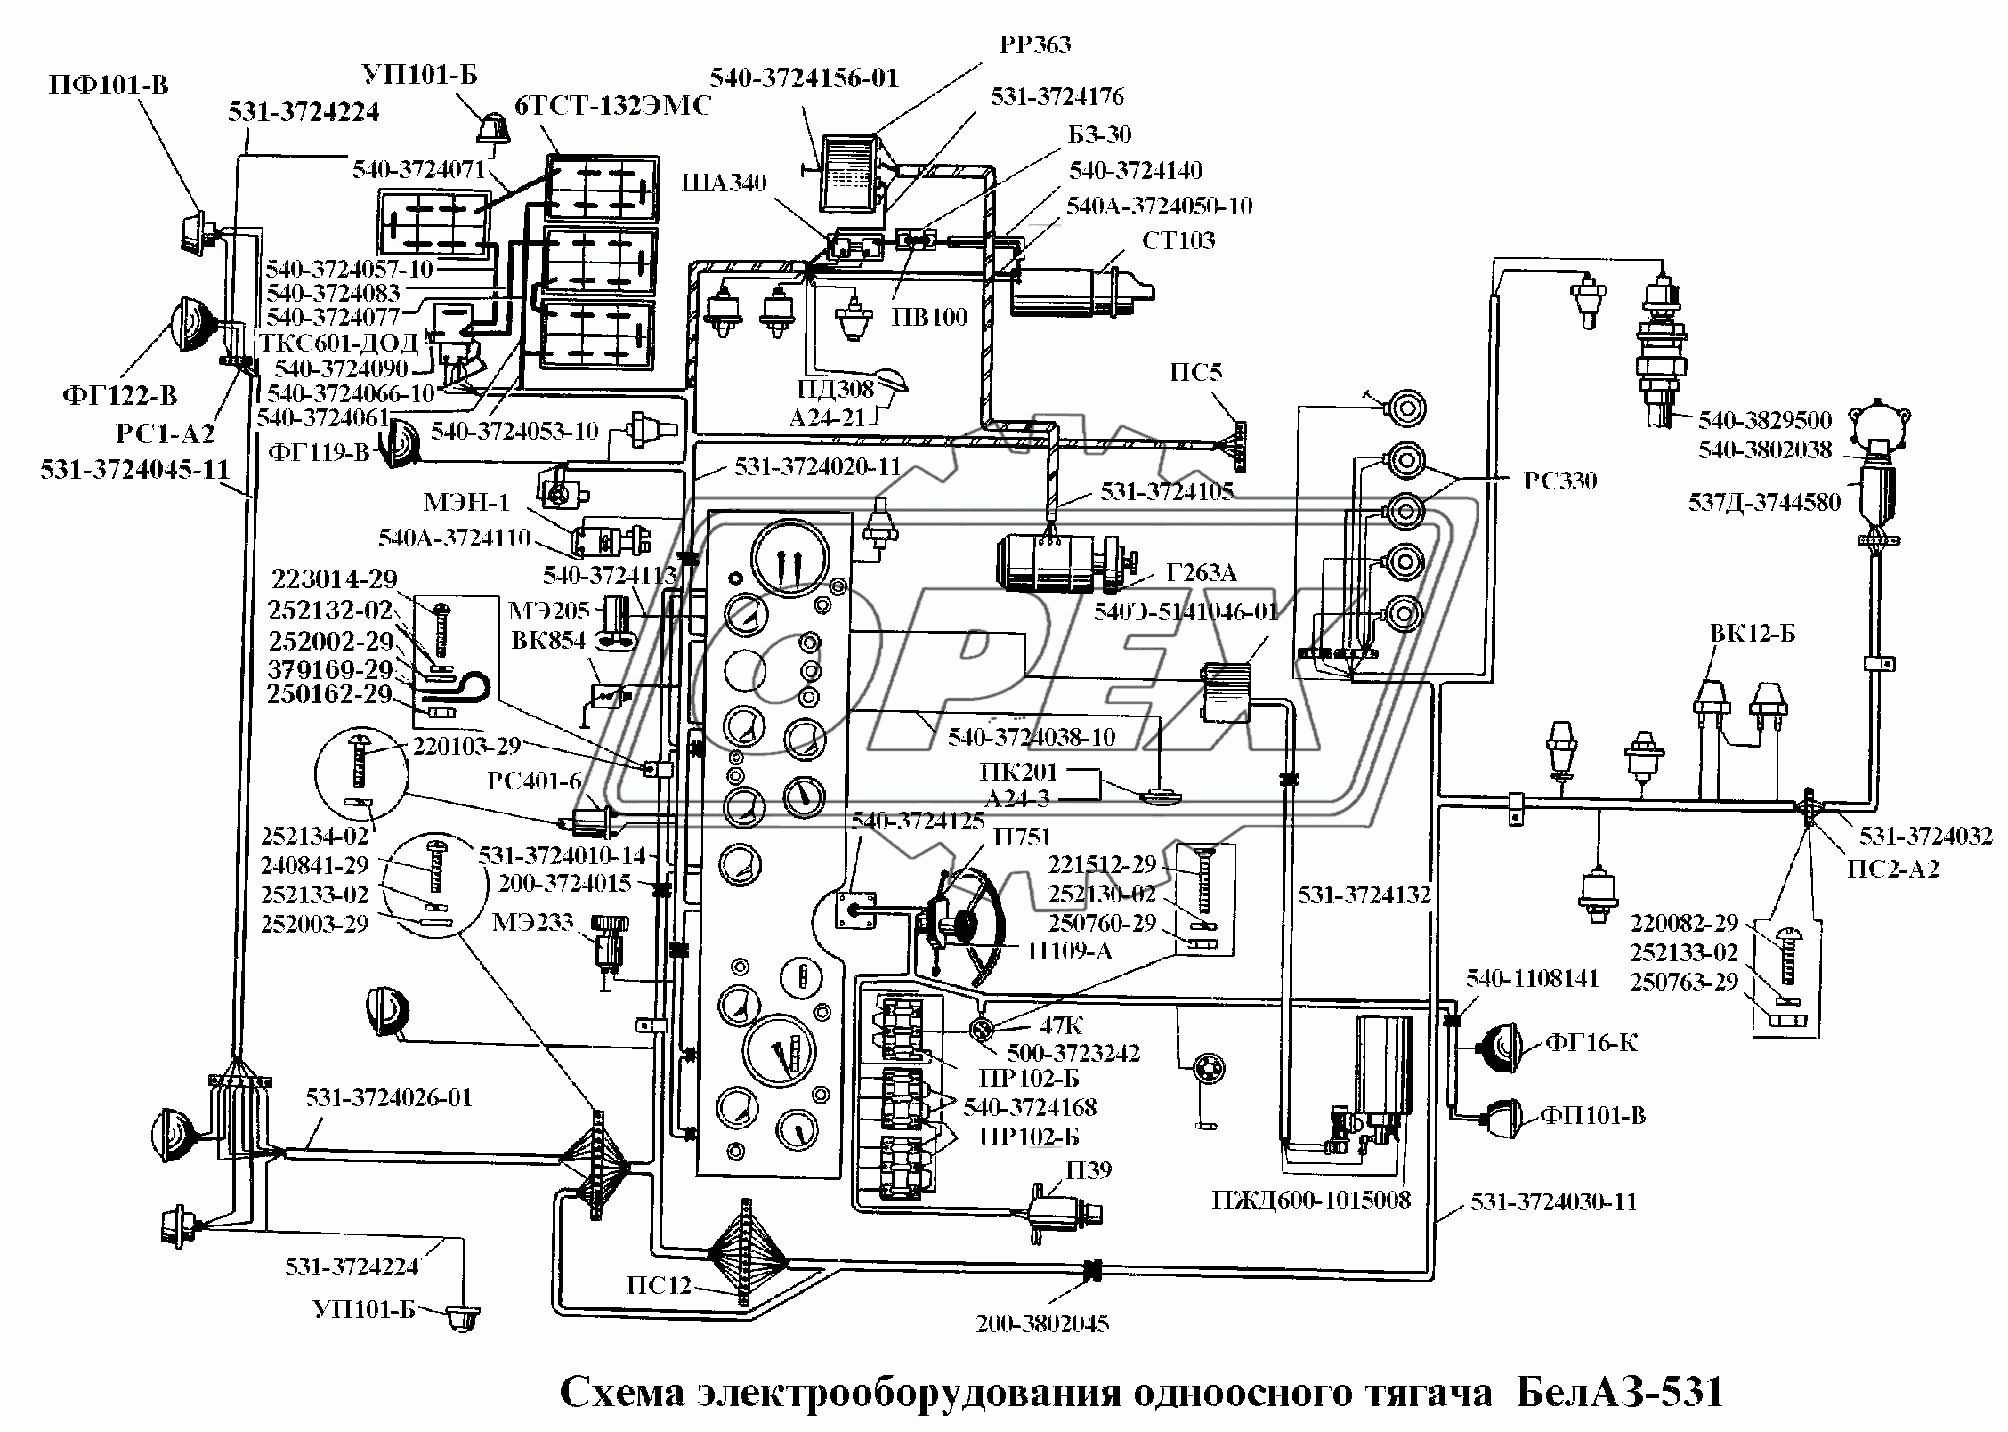 Схема электрооборудования одноосного тягача БелАЗ-531